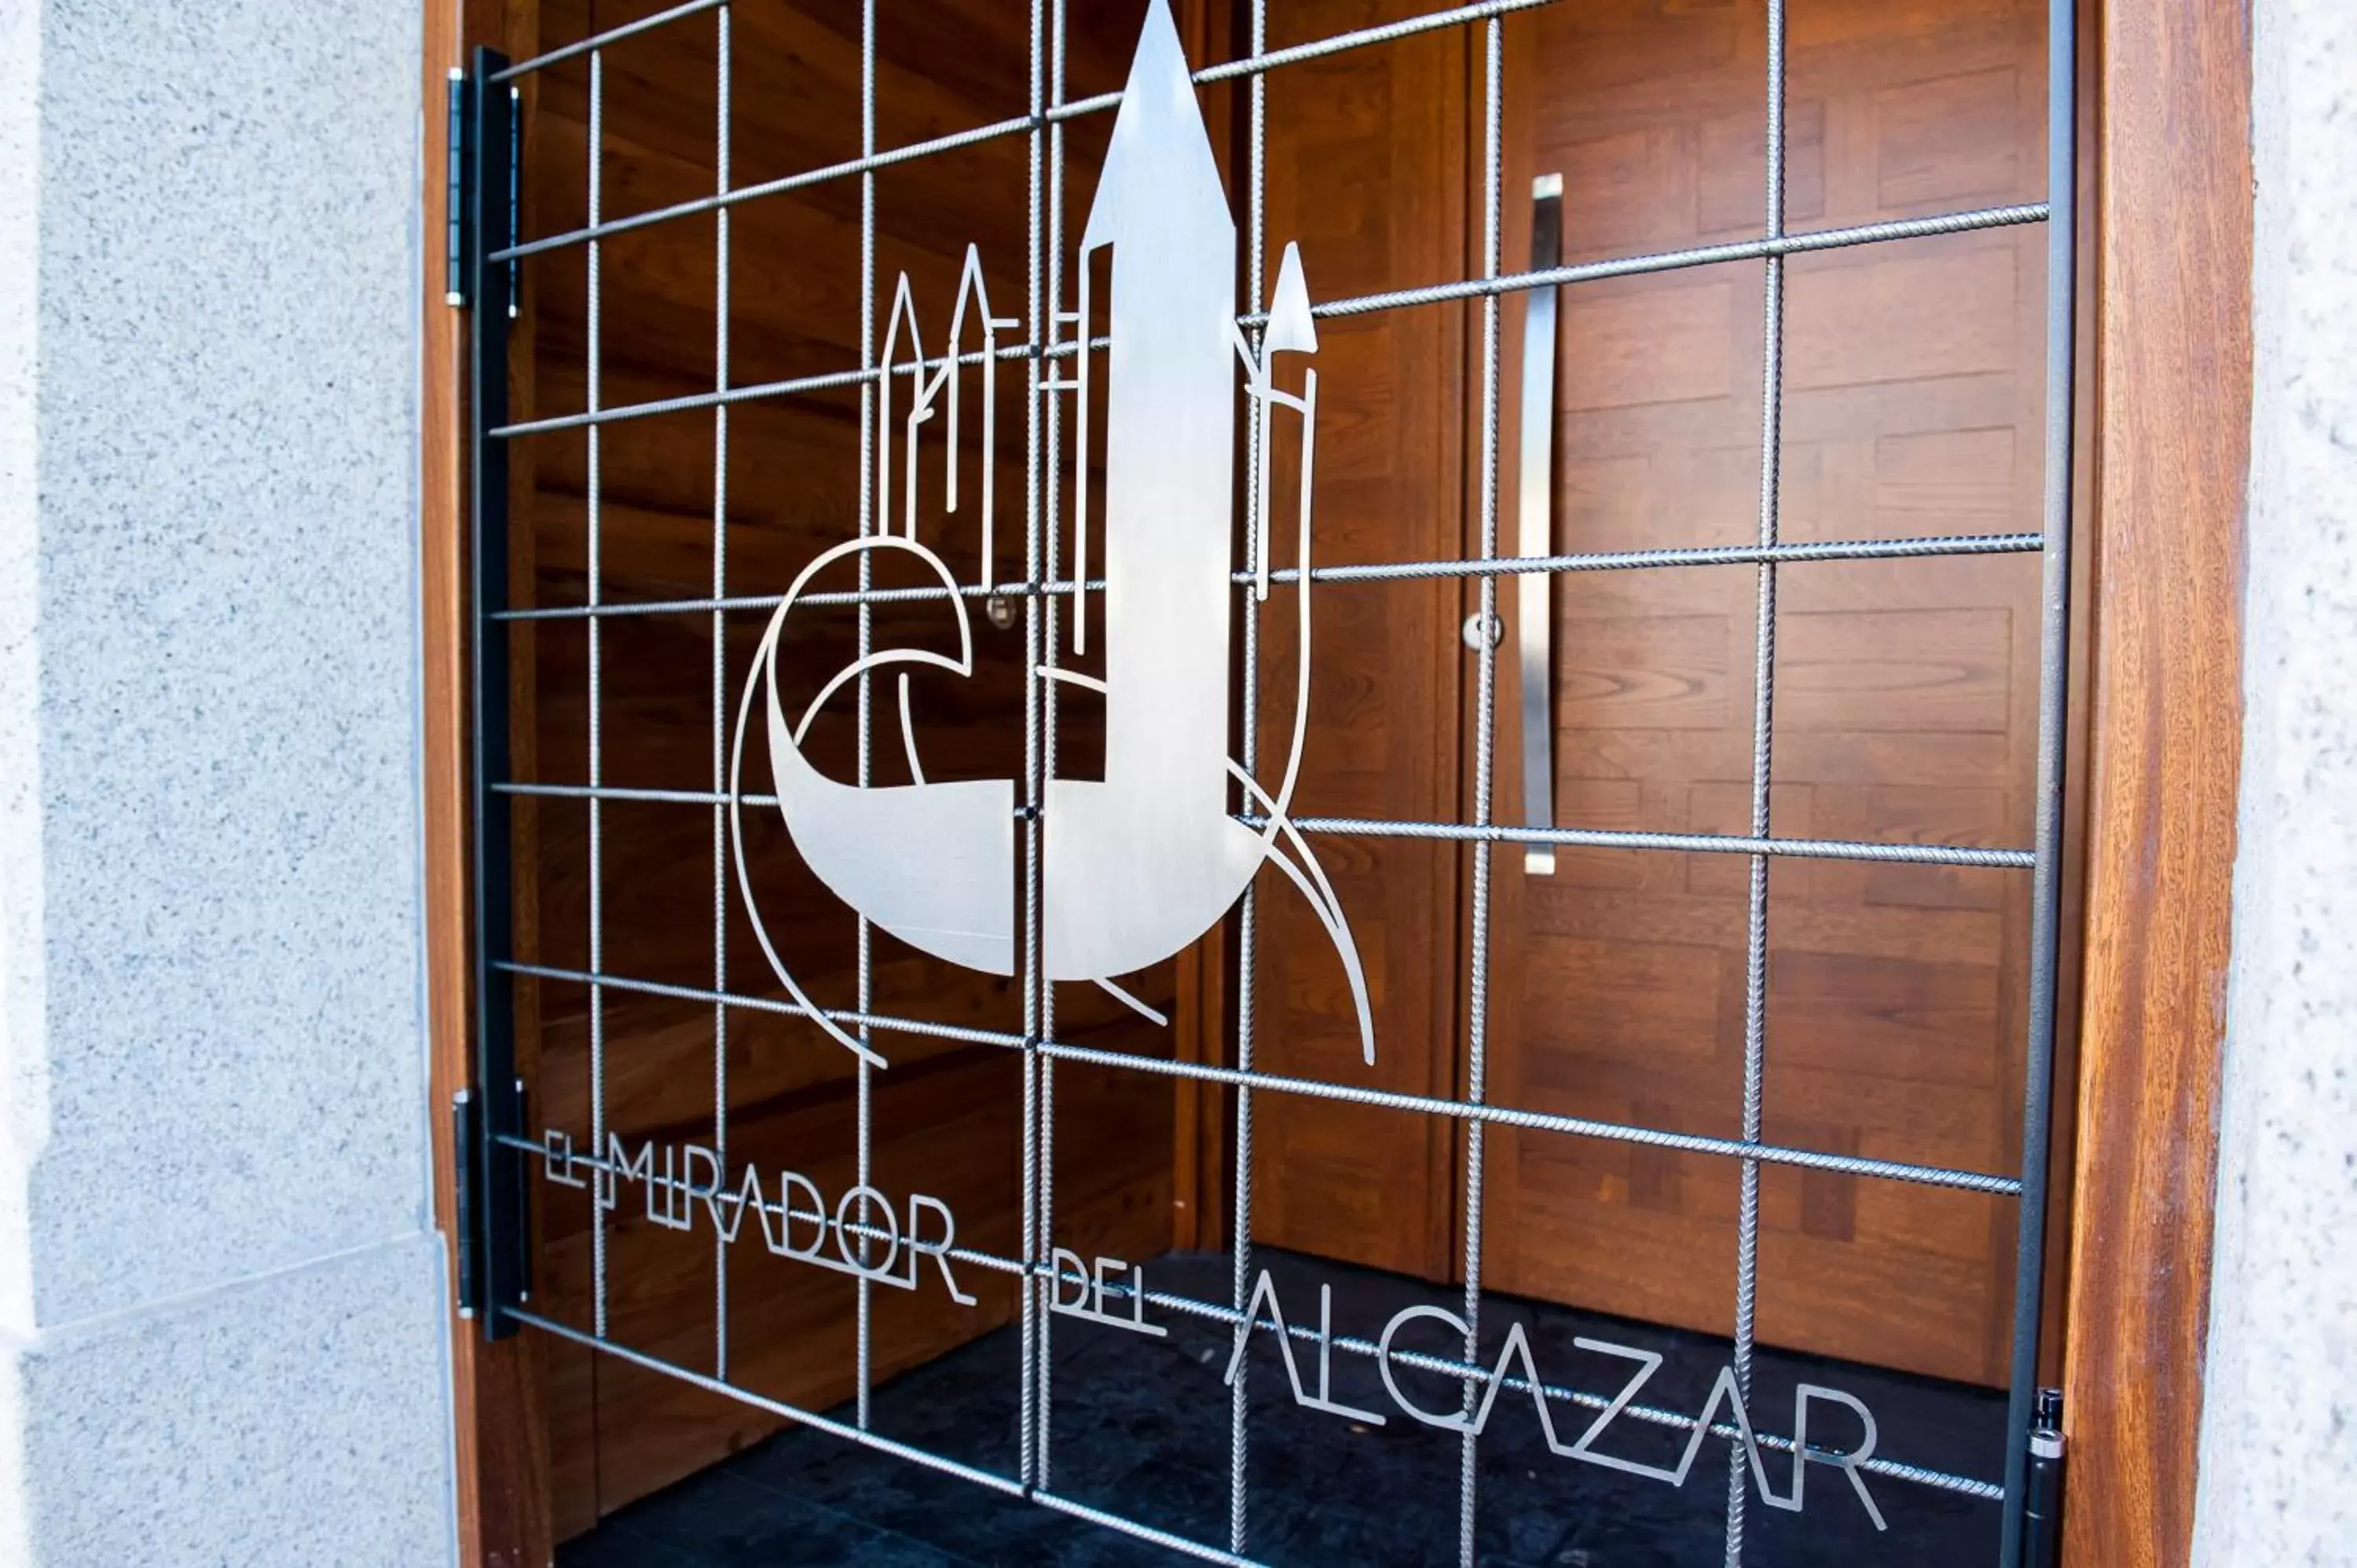 Property logo or sign, Bathroom in El Mirador Del Alcazar